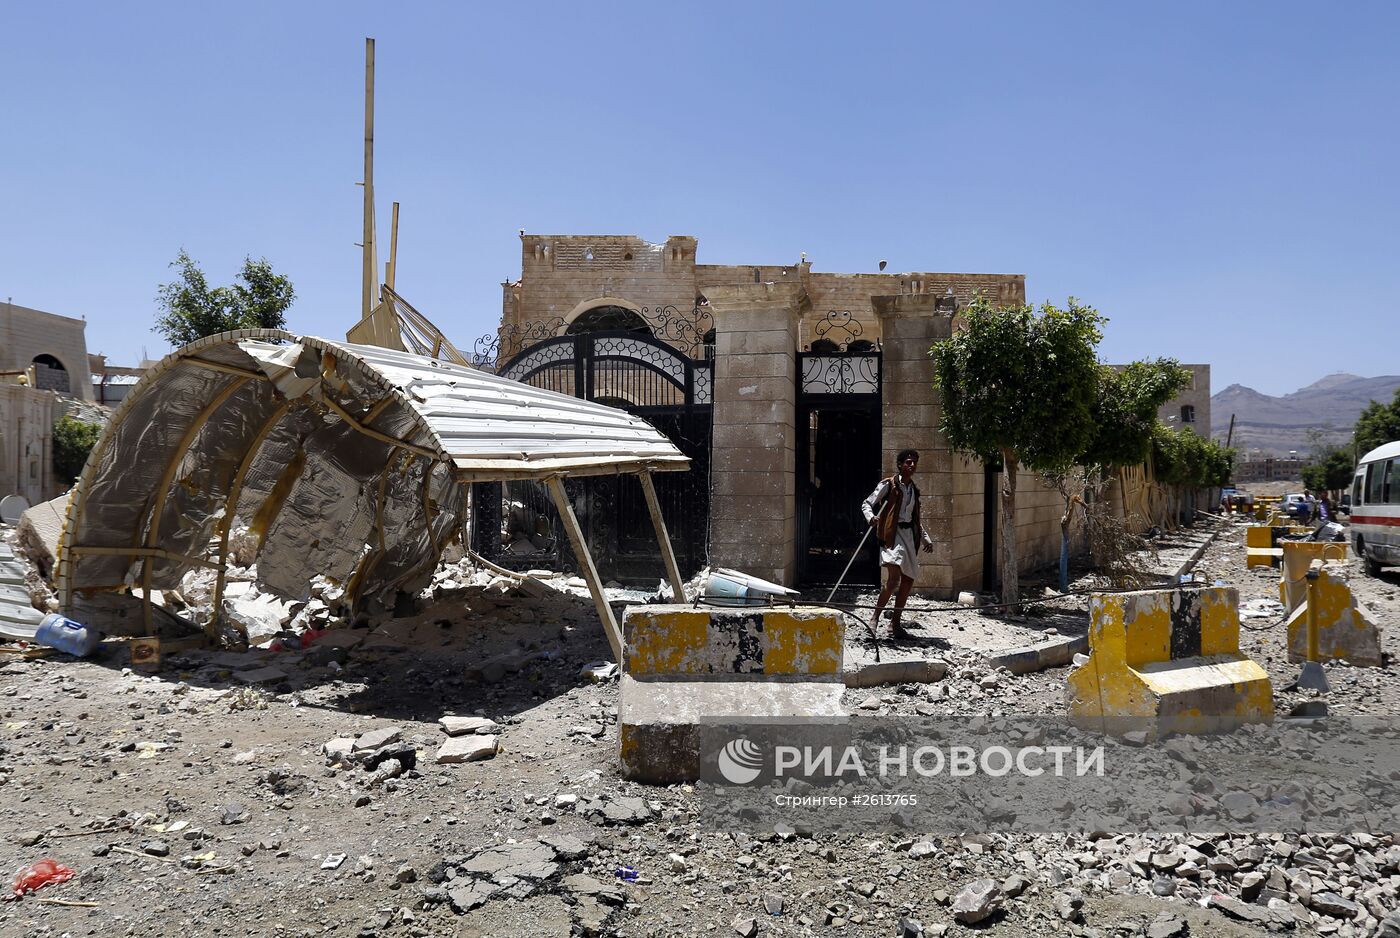 Последствия авиаударов коалиции арабских стран во главе с Саудовской Аравией в столице Йемена Сане